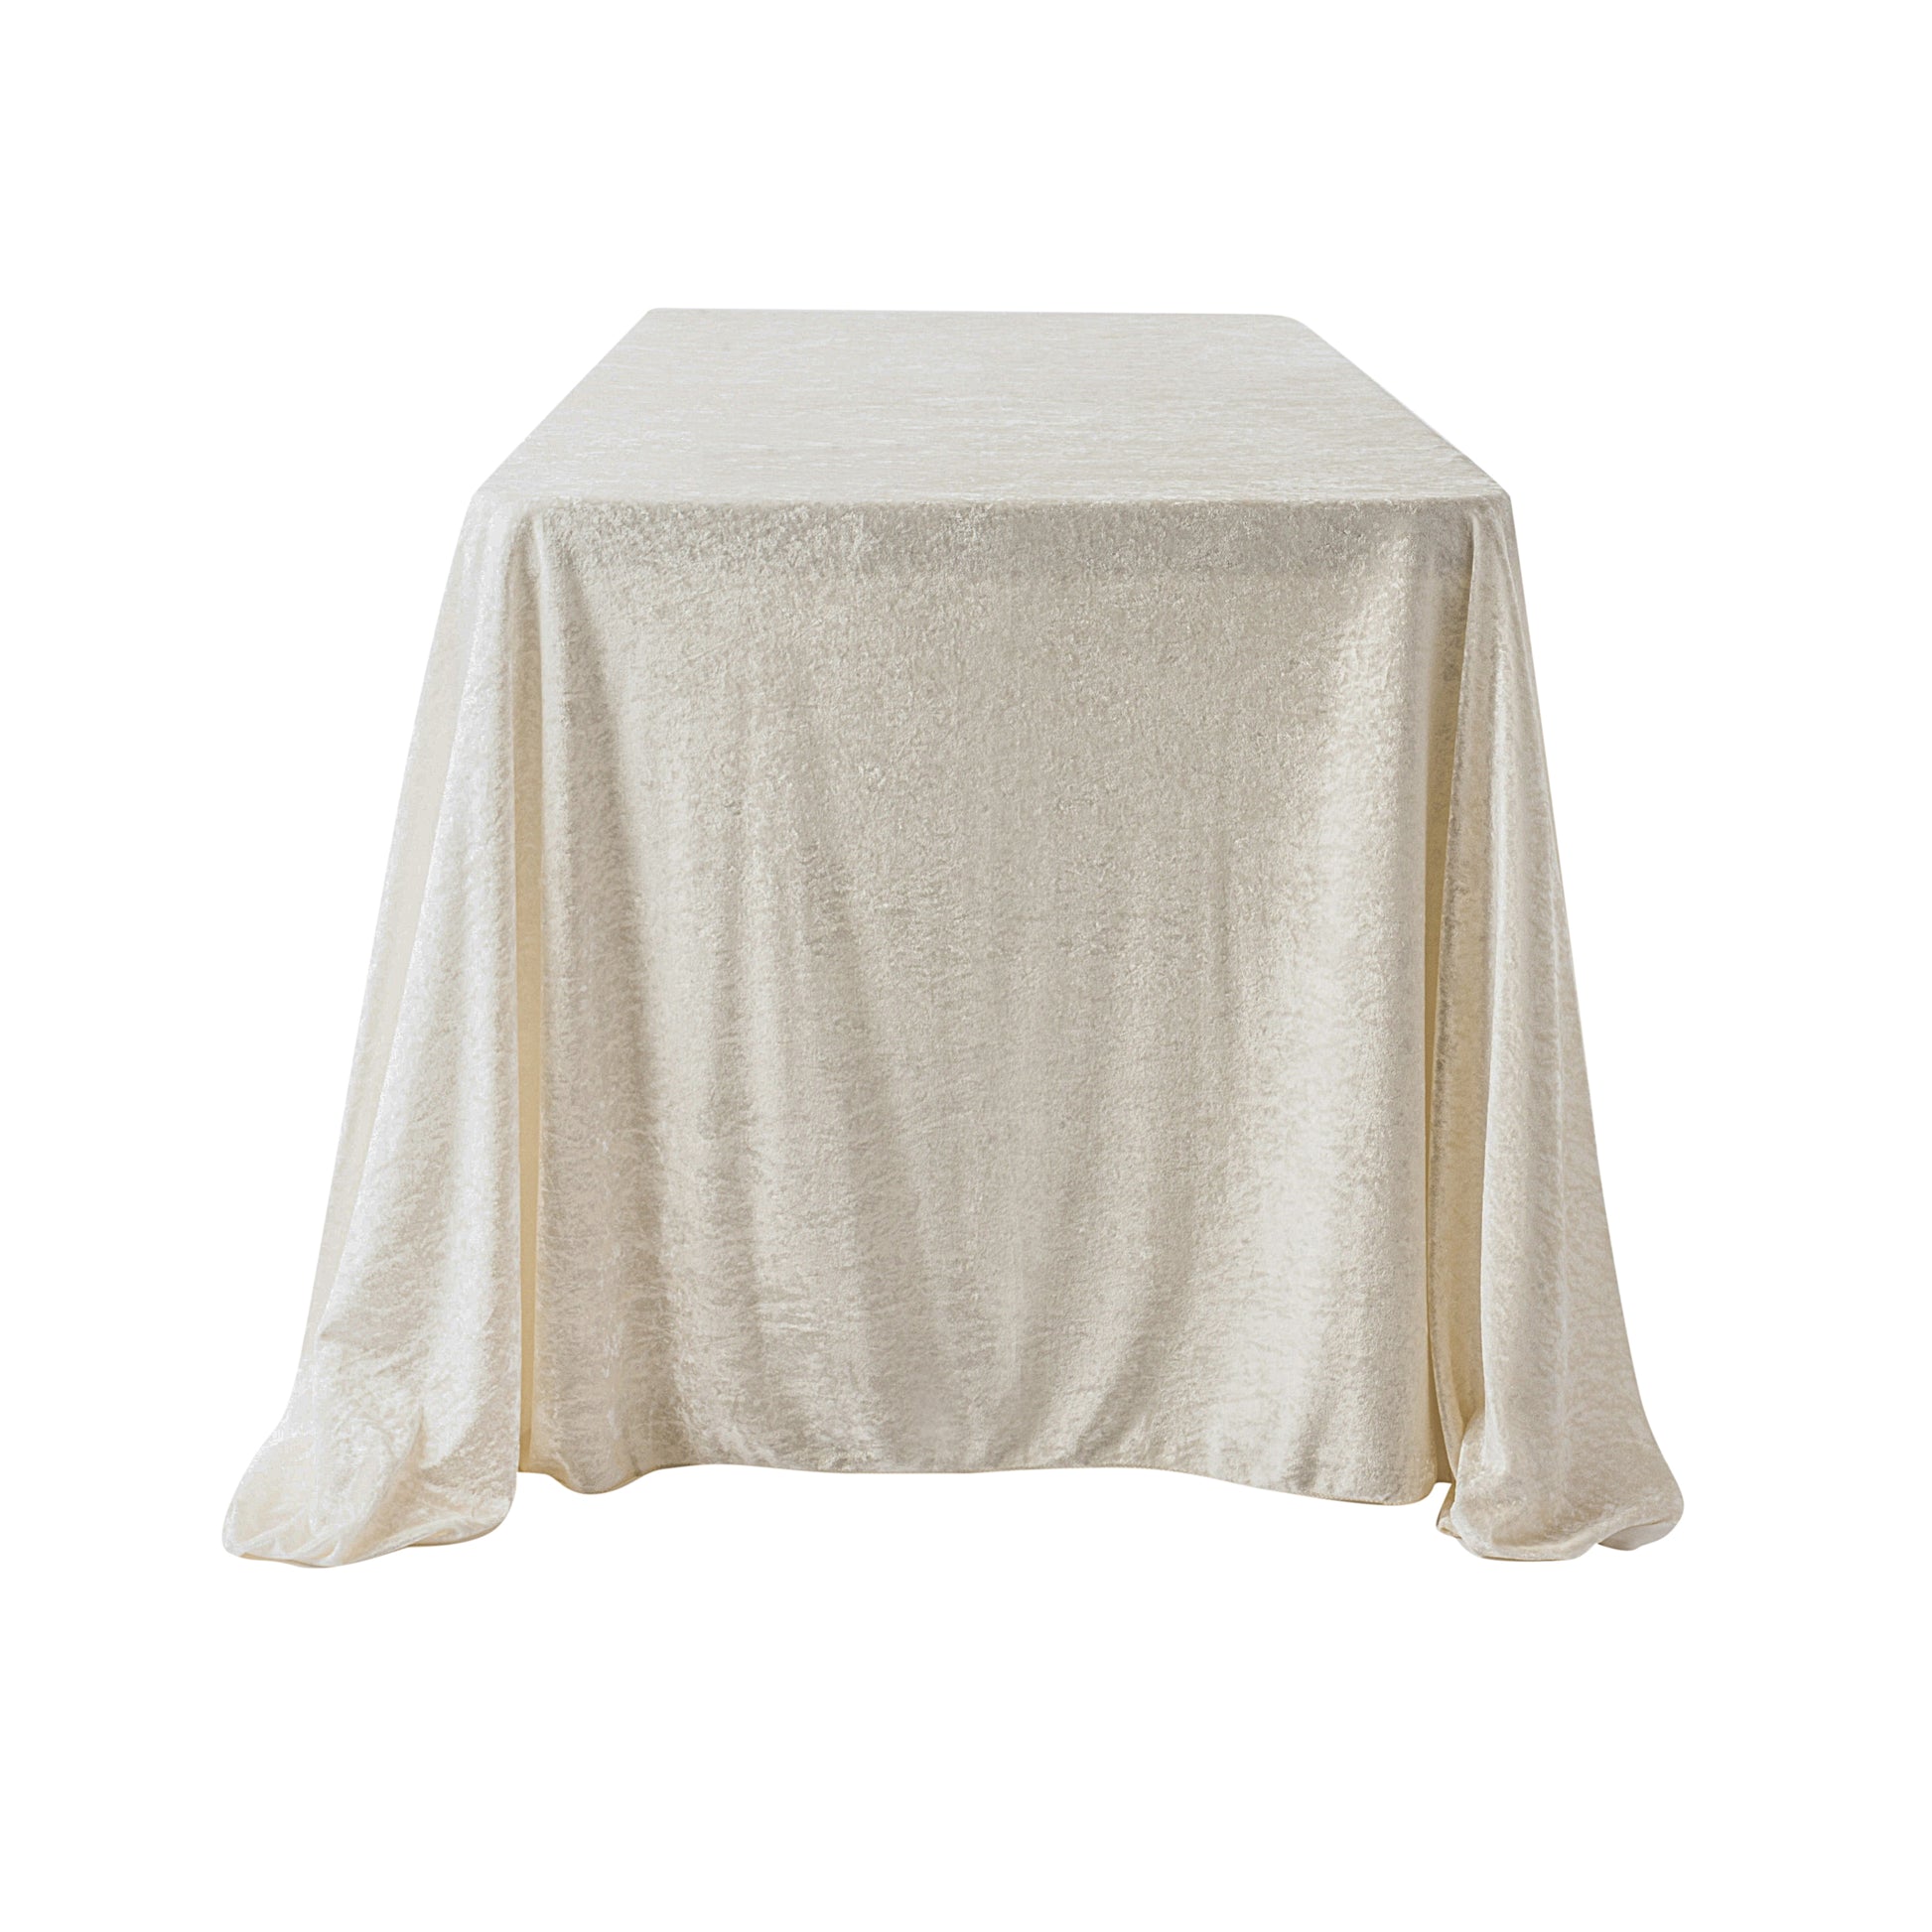 Velvet 90"x156" Rectangular Tablecloth - Ivory - CV Linens